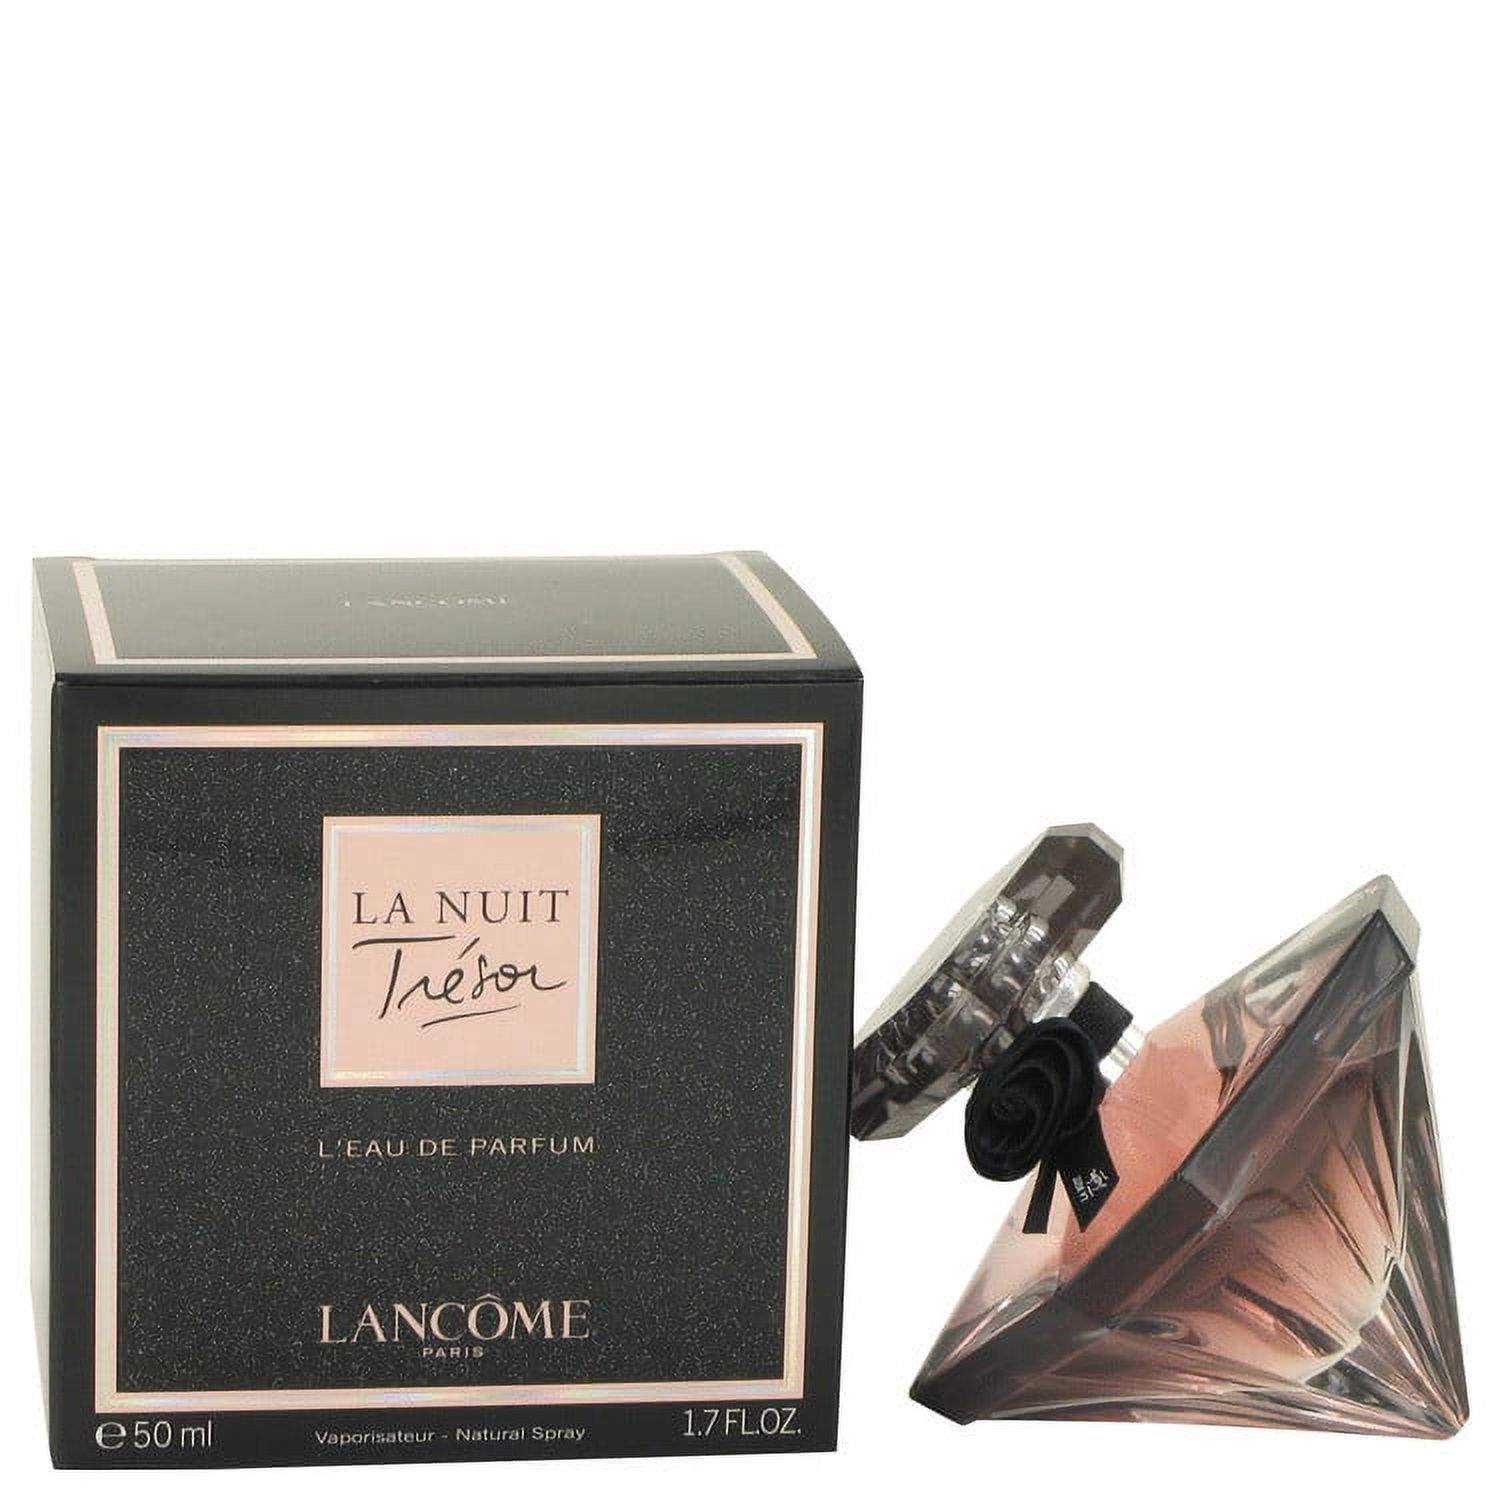 Lancome La Nuit Tresor Eau de Parfum, Perfume for Women, 1.7 Oz - image 1 of 5